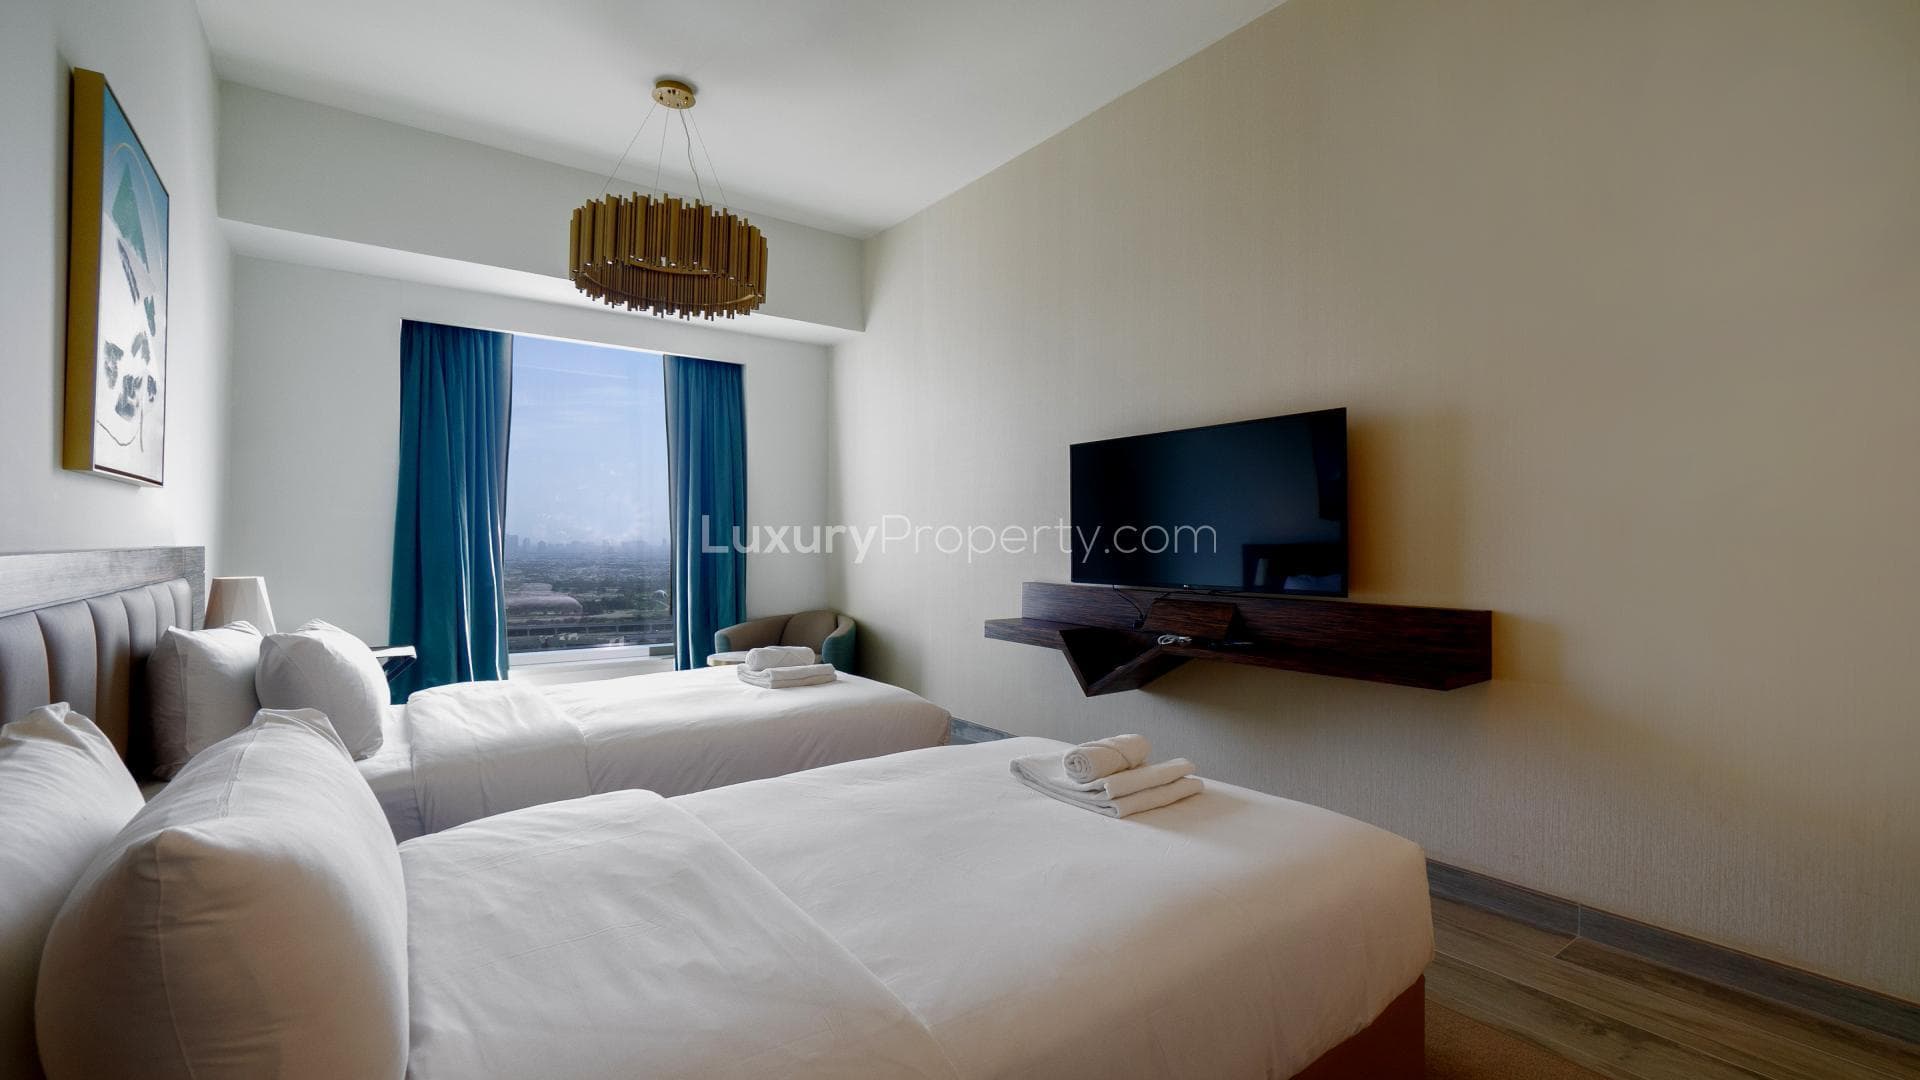 2 Bedroom Apartment For Rent Avani Palm View Hotel Suites Lp36171 50a2e5cbca08840.jpg